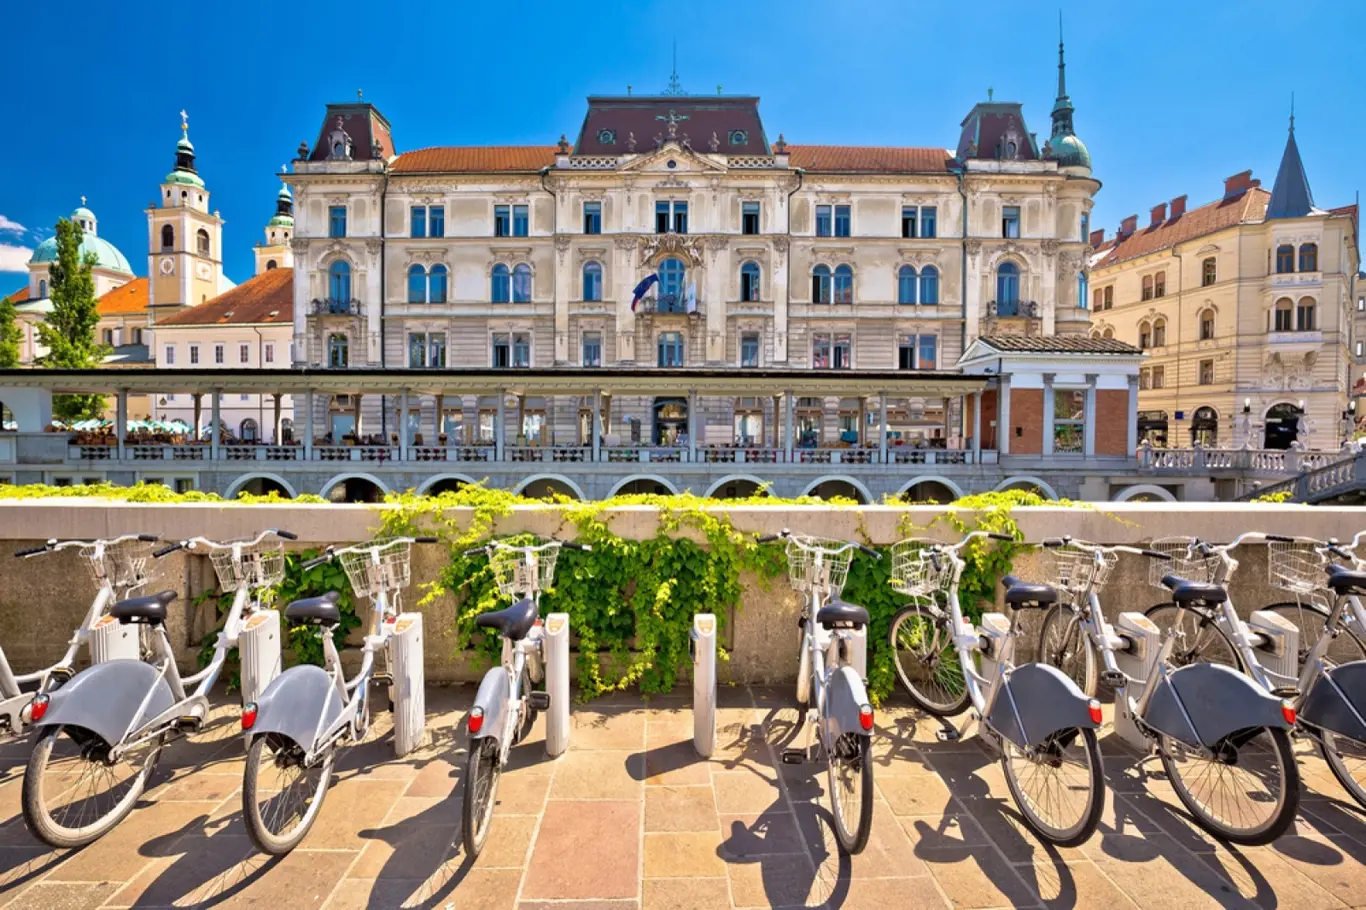 Zážitky - 8 důvodů, proč si zamilovat Lublaň